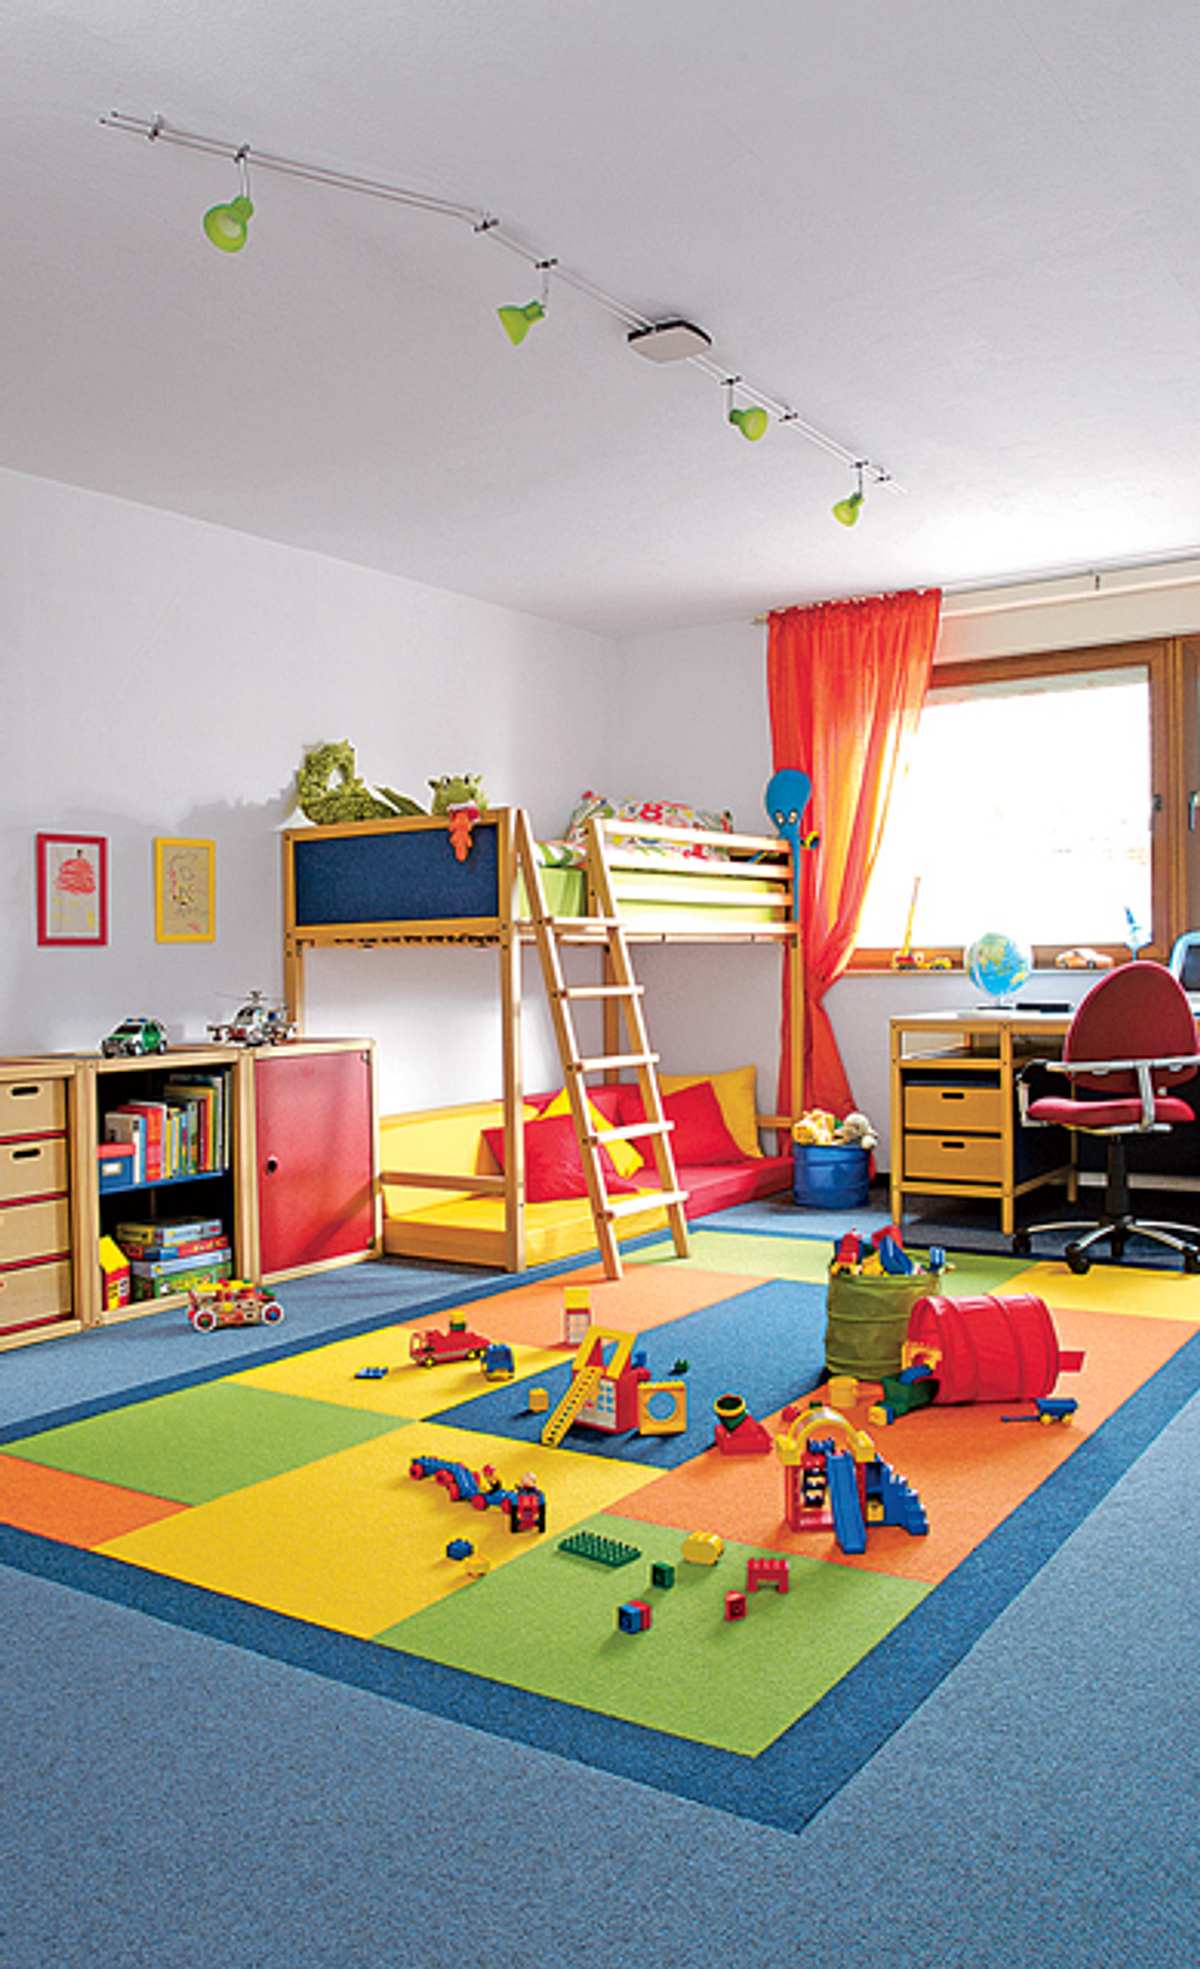 Halogen-Niedervolt-Deckenleuchte im Kinderzimmer